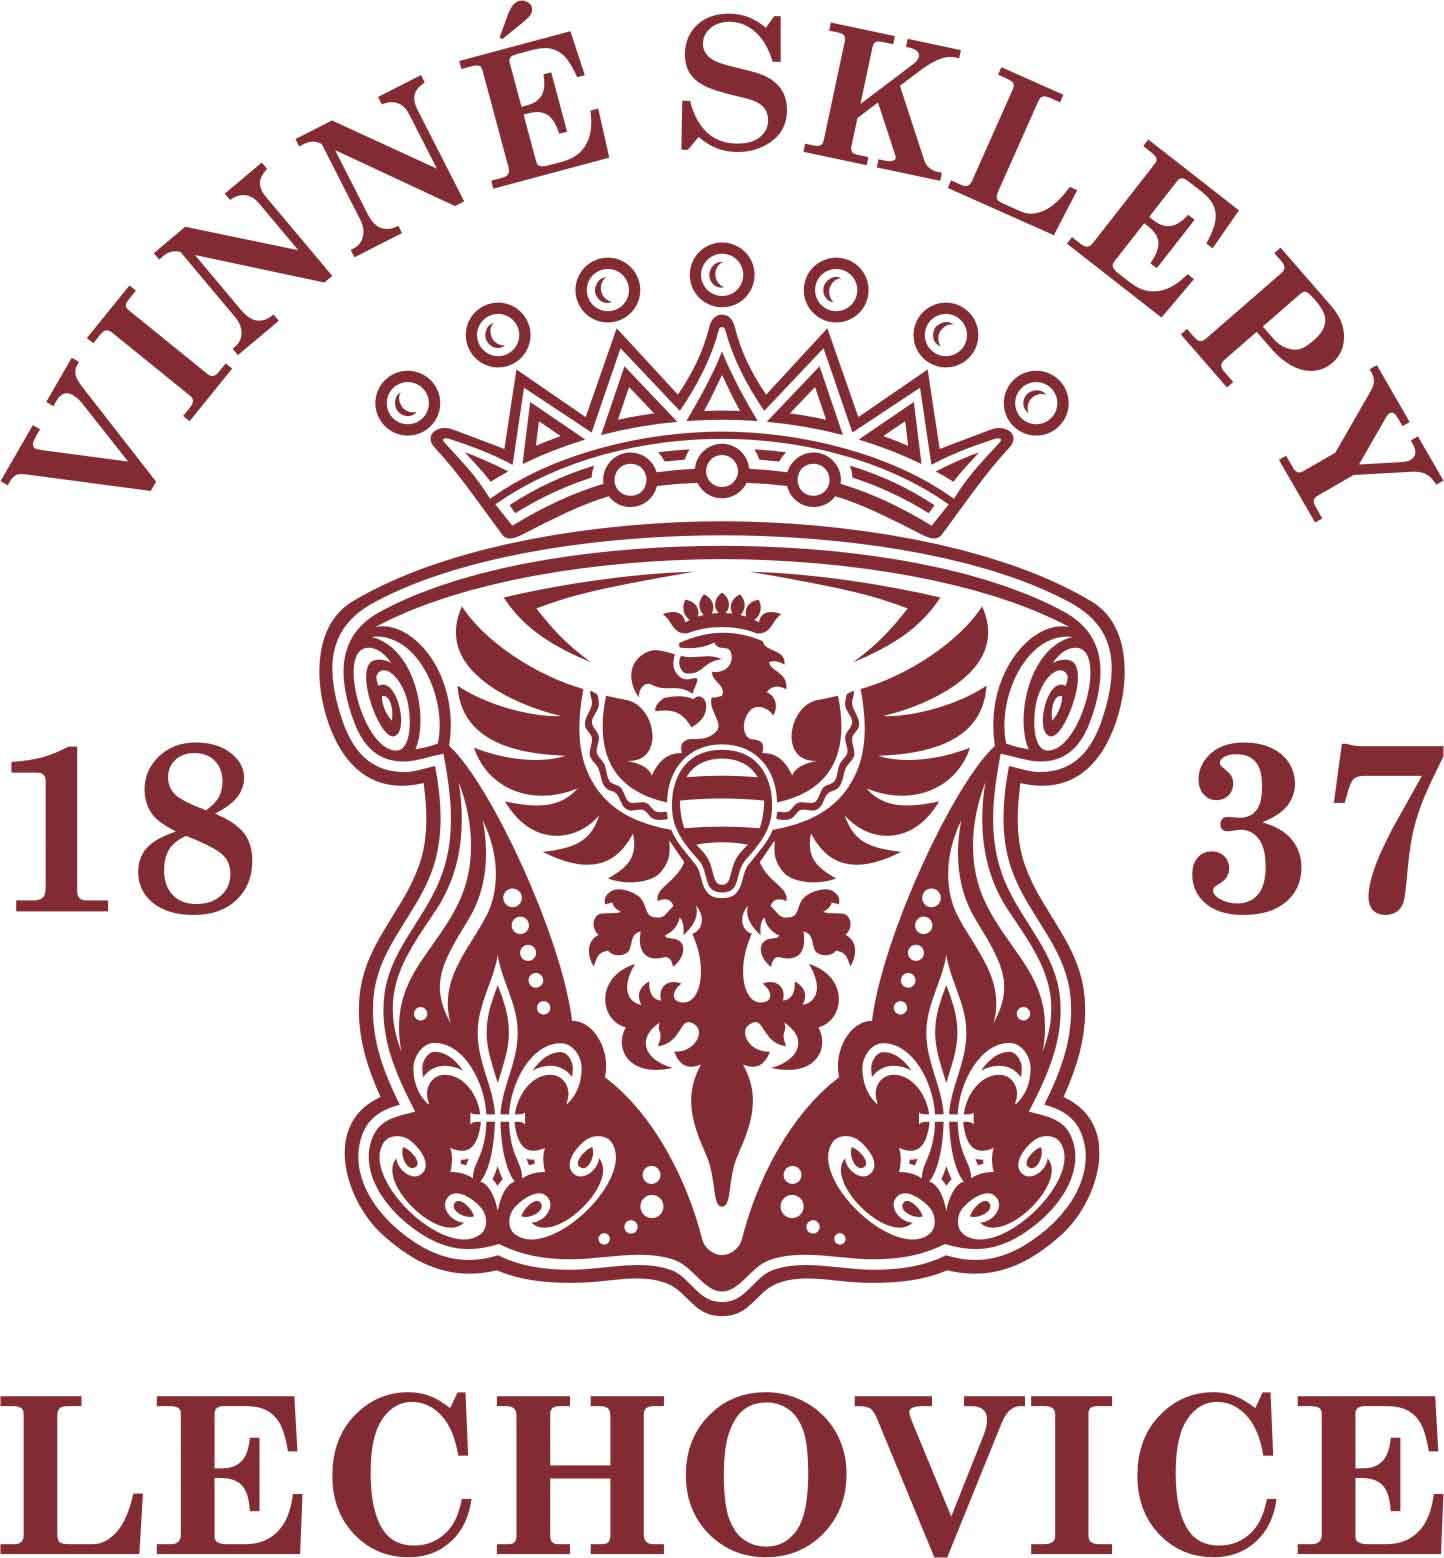 Vinné sklepy Lechovice LOGO A